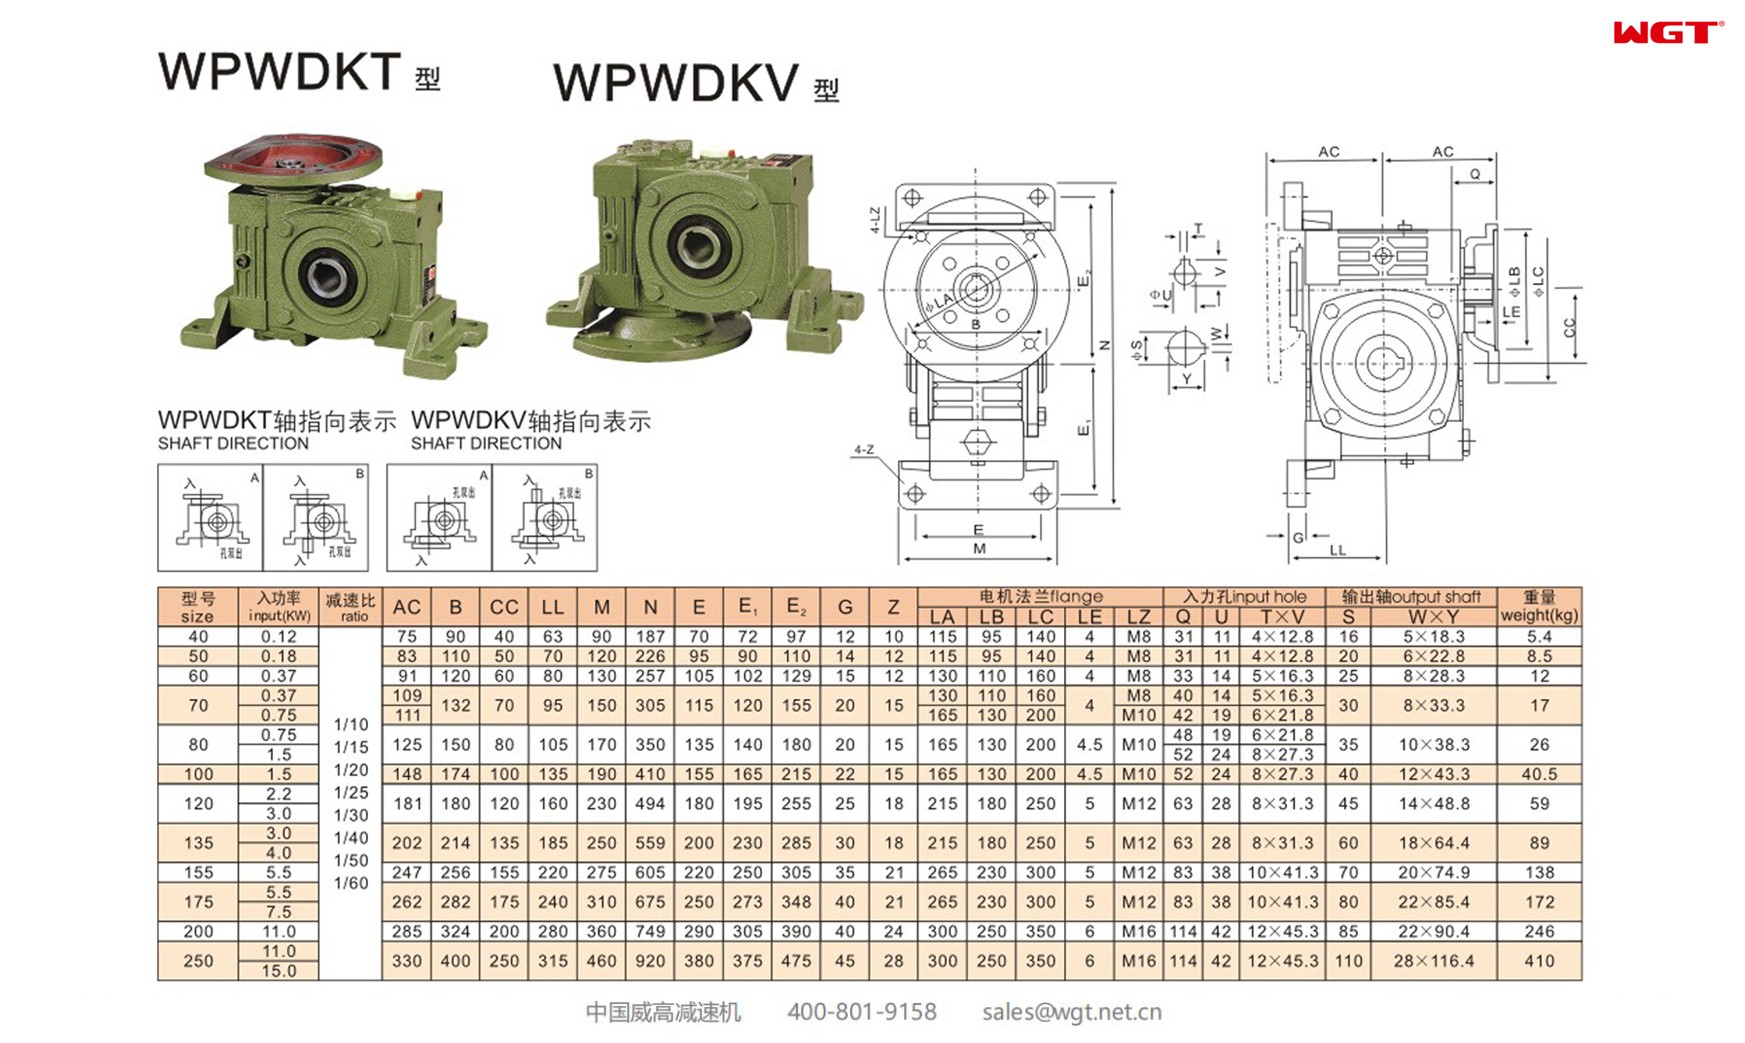 WPWDKT80 worm gear reducer universal speed reducer 